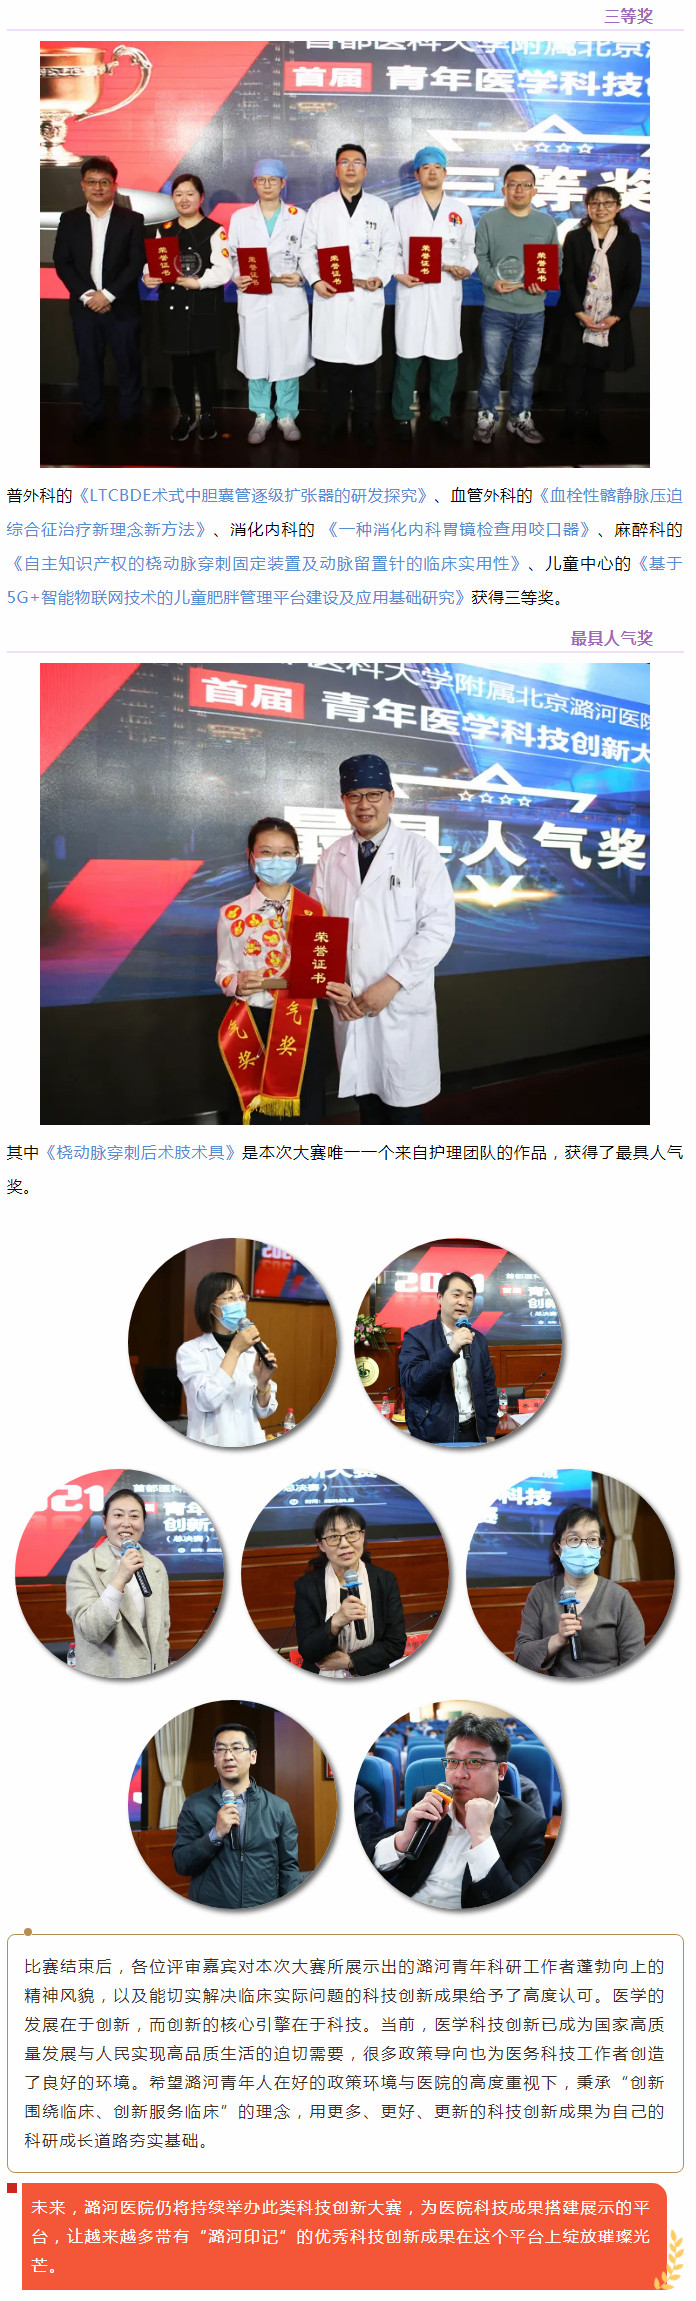 4-17 加快科技创新步伐 推动医院科研发展迈入新阶段——潞河医院举办首届青年医学科技创新大赛---3.jpg